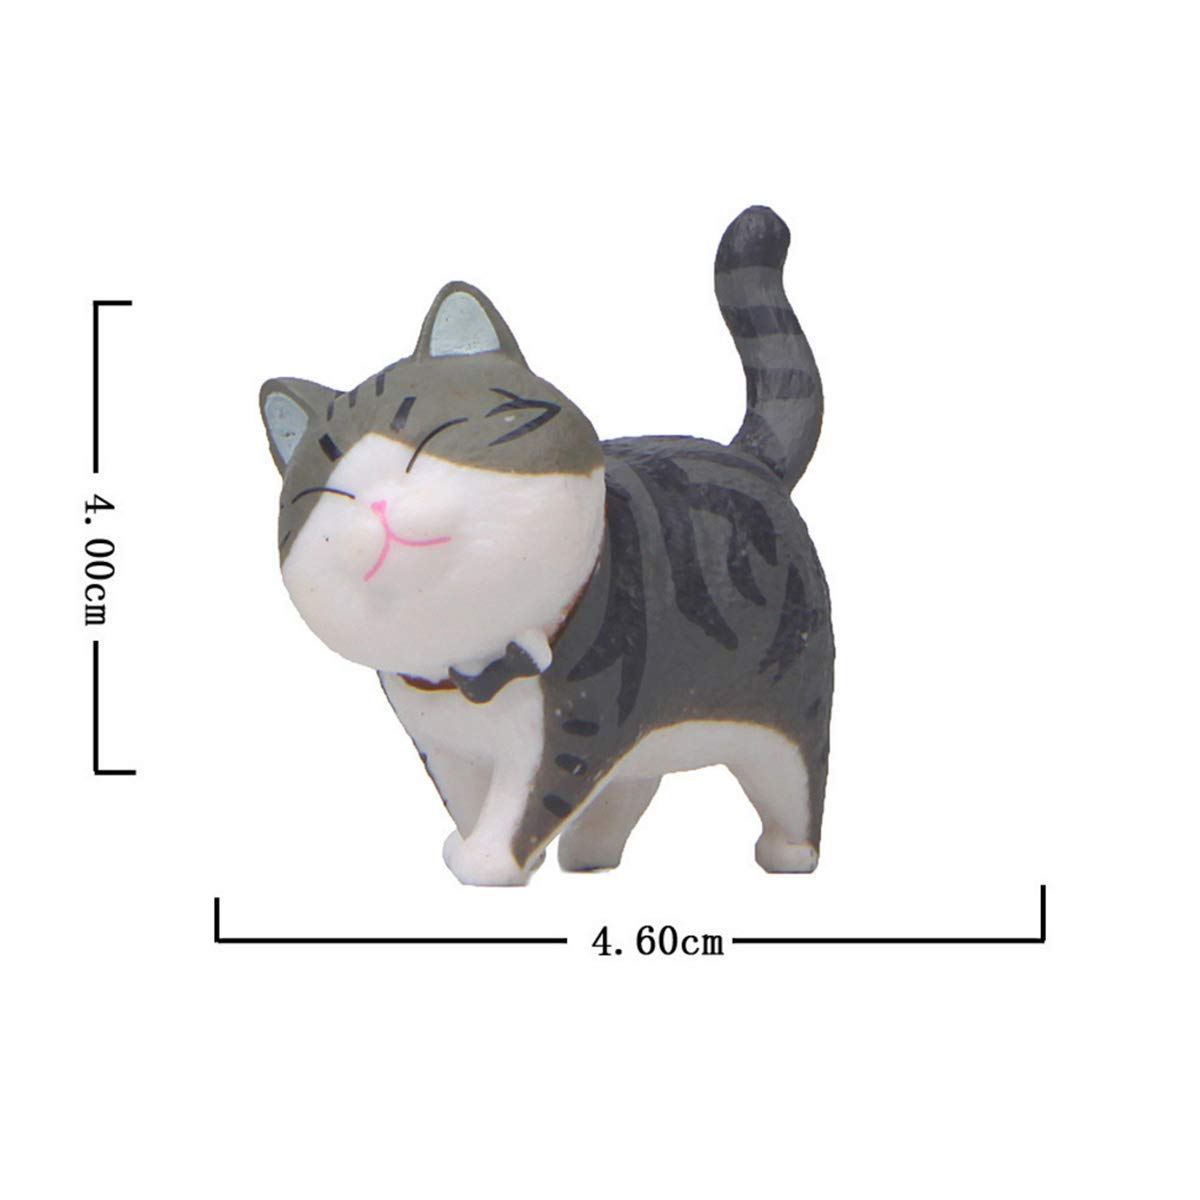 Nếu những con mèo nhỏ đáng yêu là thứ bạn yêu thích, hãy xem ngay hình ảnh Miniature Cat Figure liên quan đến avatar Tin Pot trong Roblox. Bạn sẽ yêu thích những chiếc móng vuốt và đuôi xoắn trong đồ chơi nhỏ này.